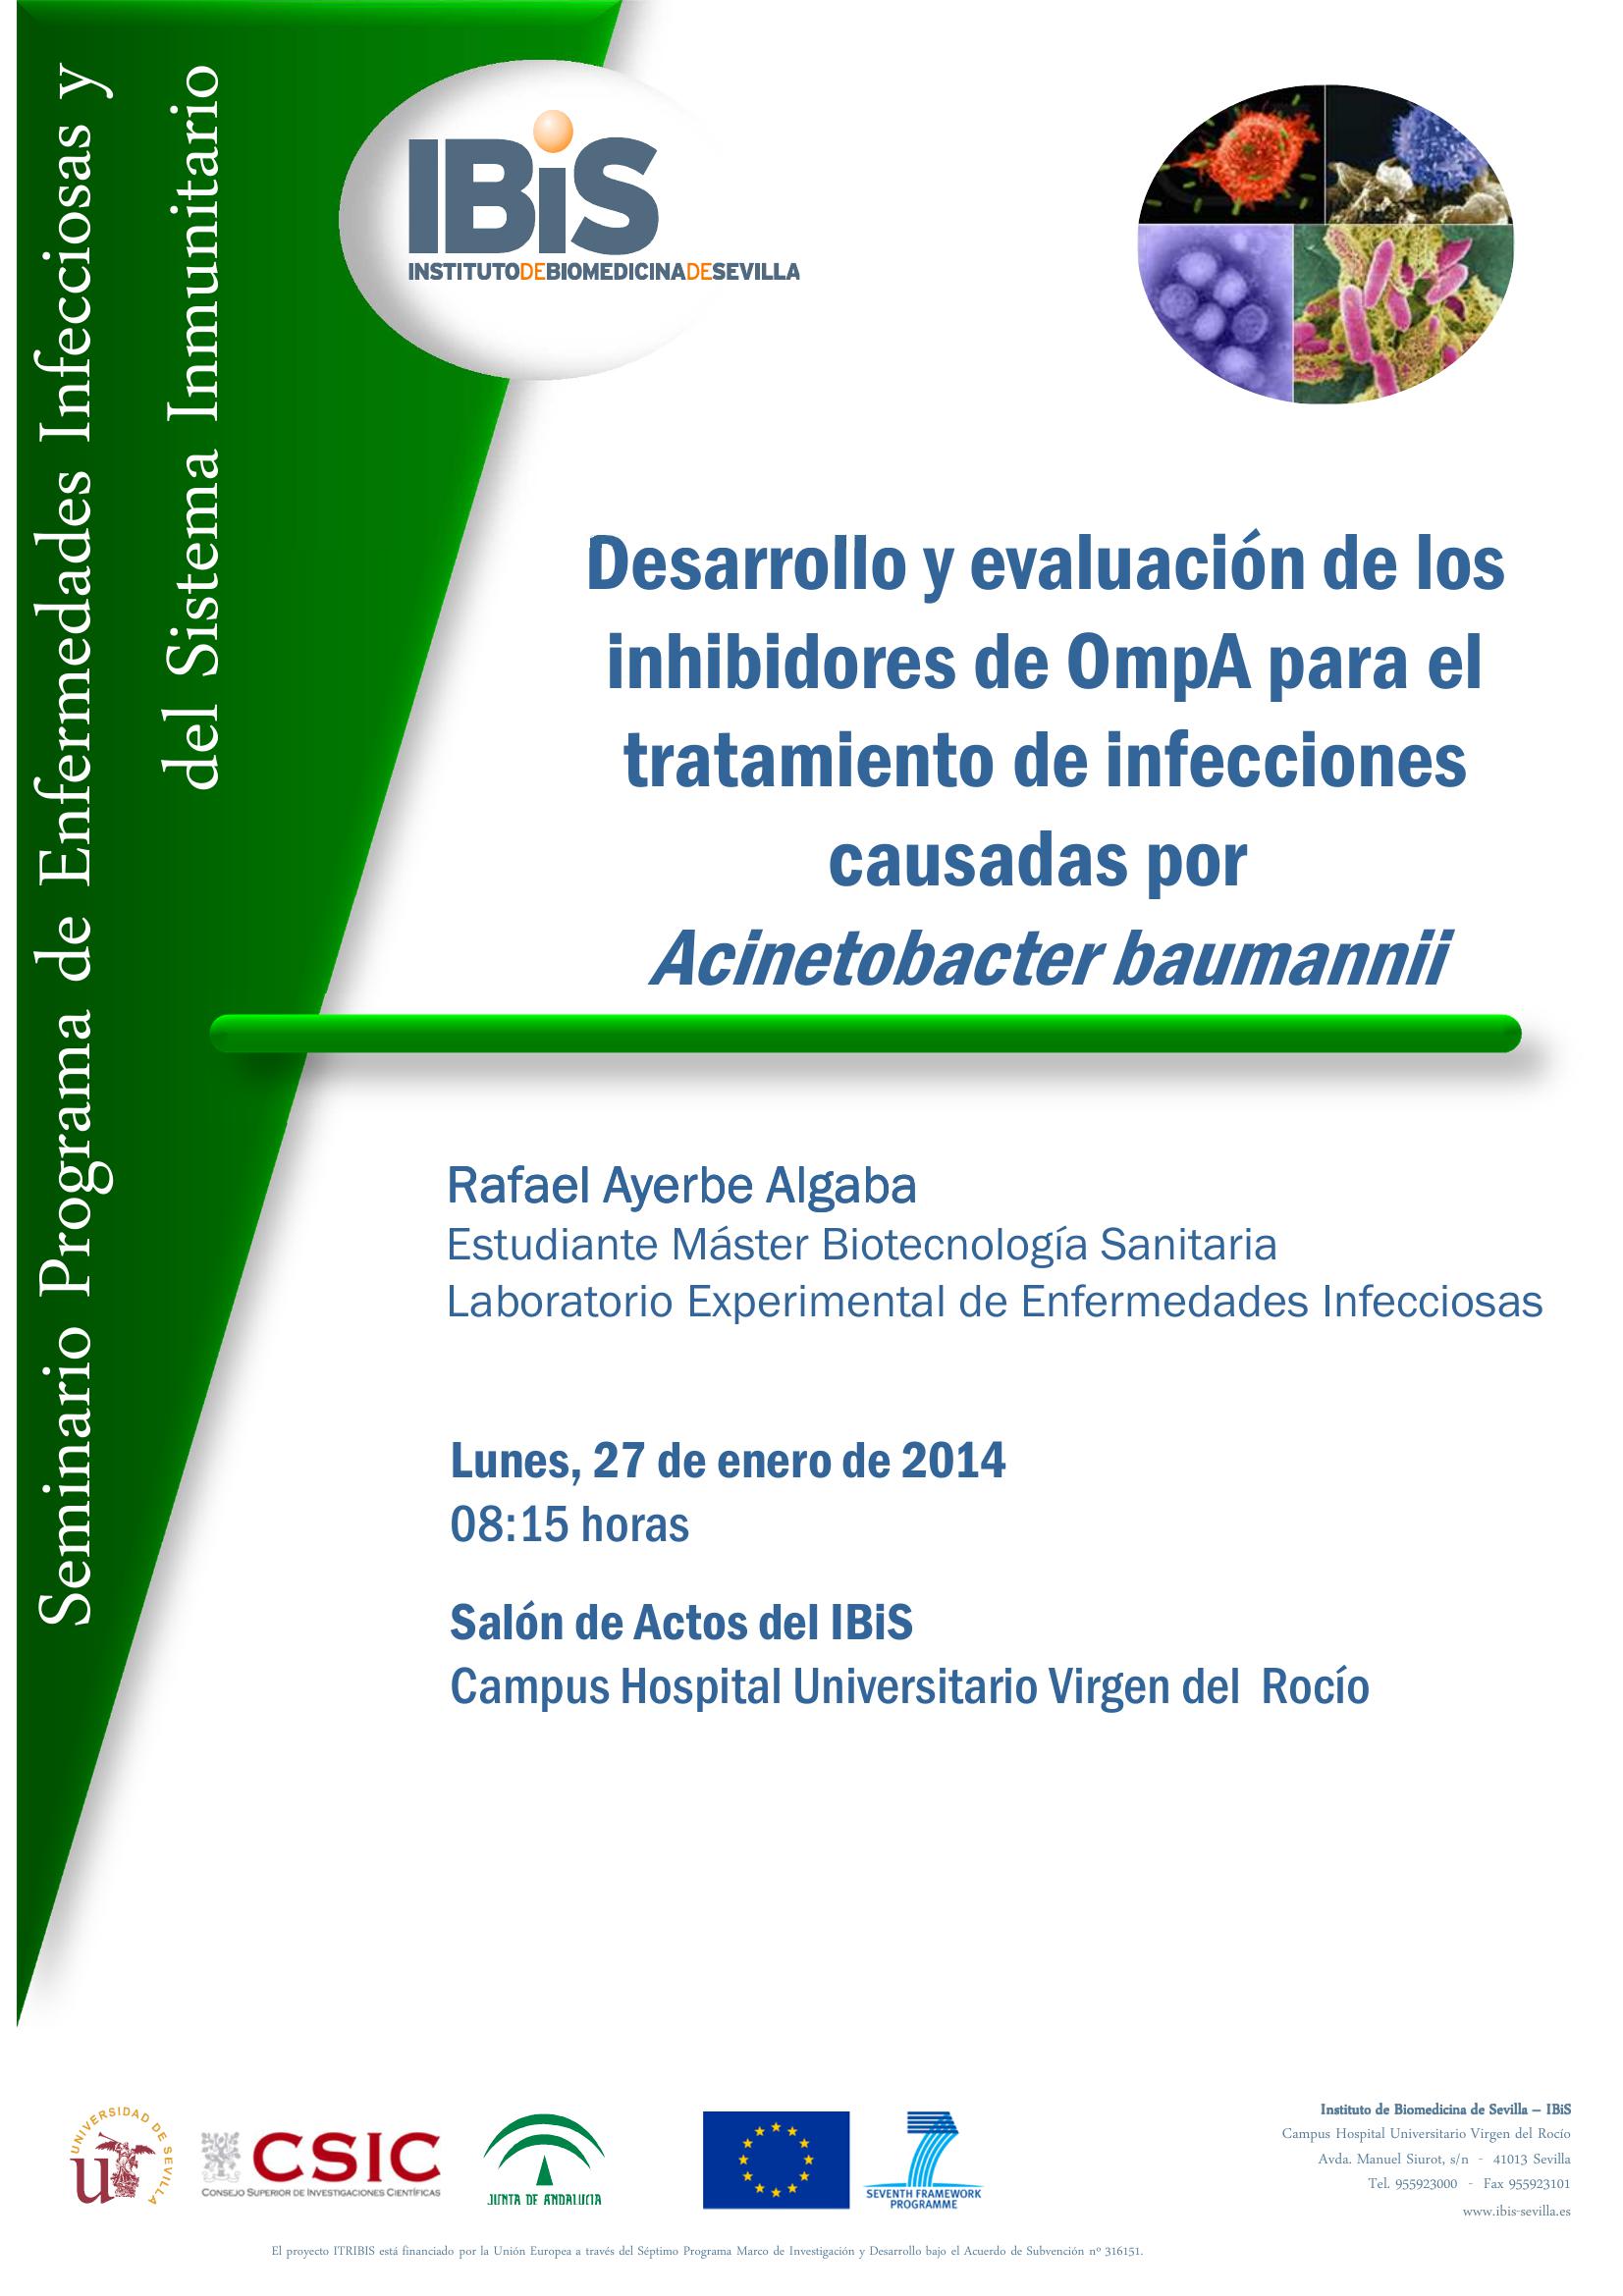 Poster: Desarrollo y evaluación de los inhibidores de OmpA para el tratamiento de infecciones causadas por Acinetobacter baumannii